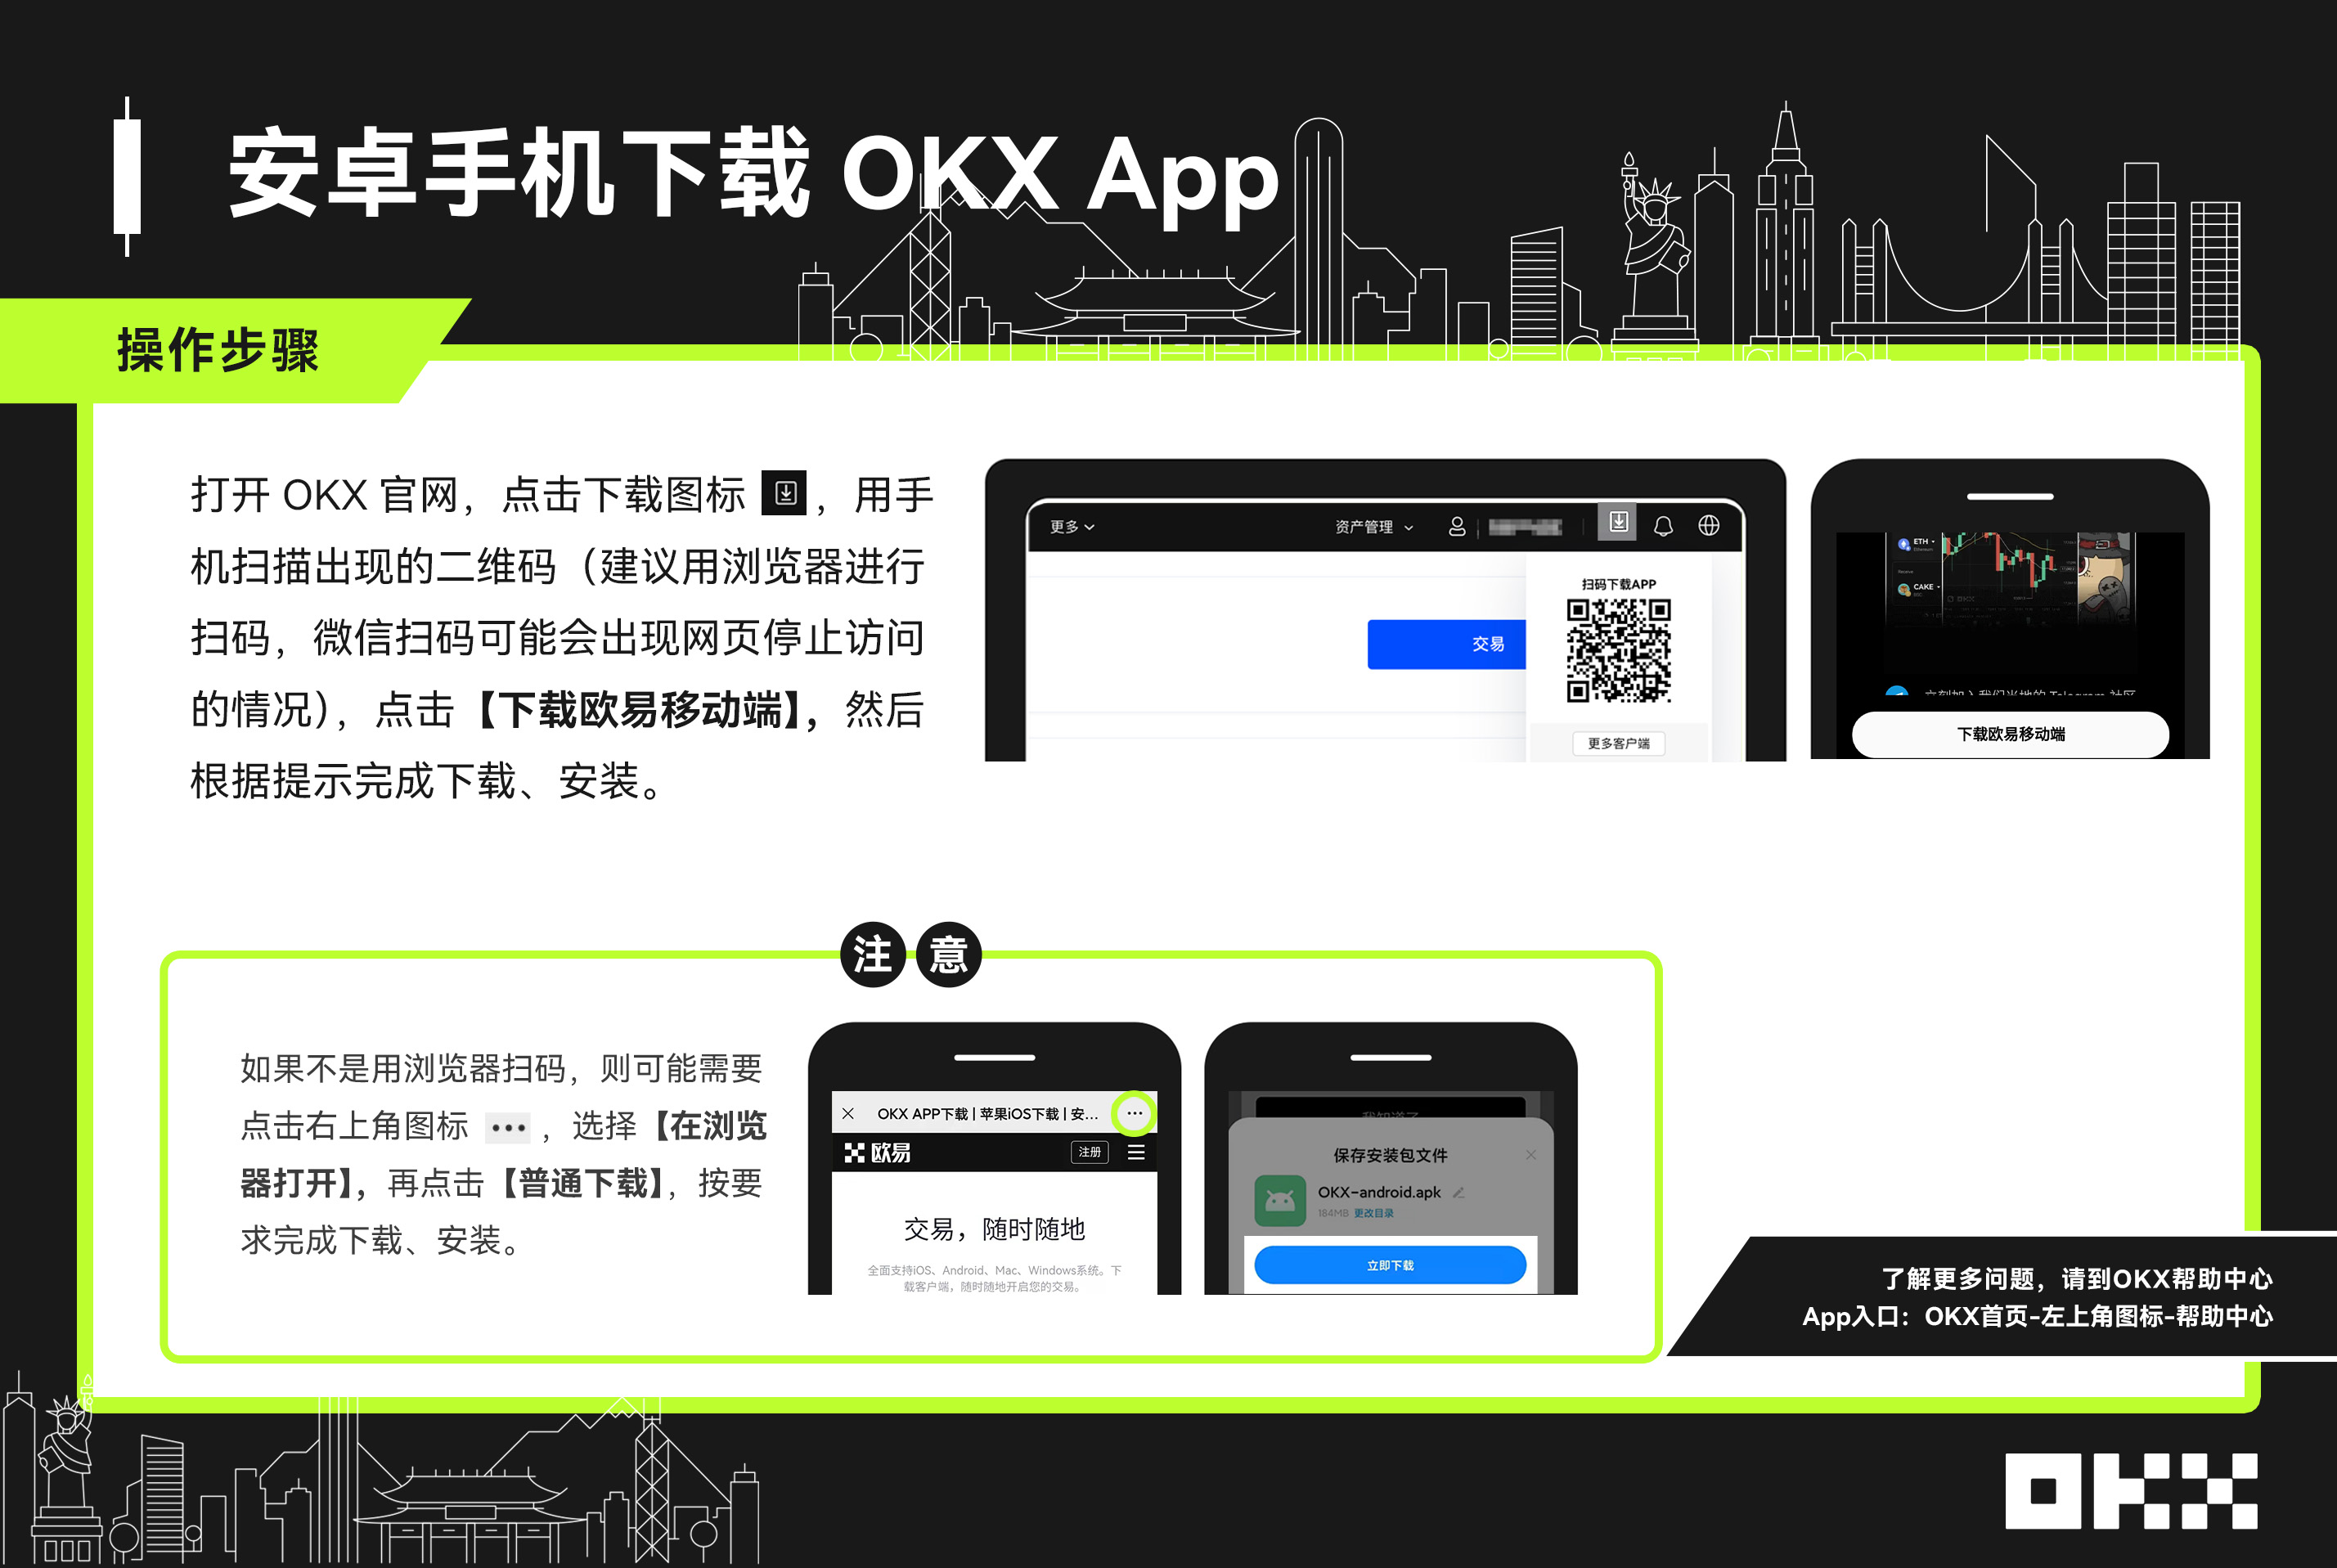 安卓手机如何下载欧易/OKX交易所APP？